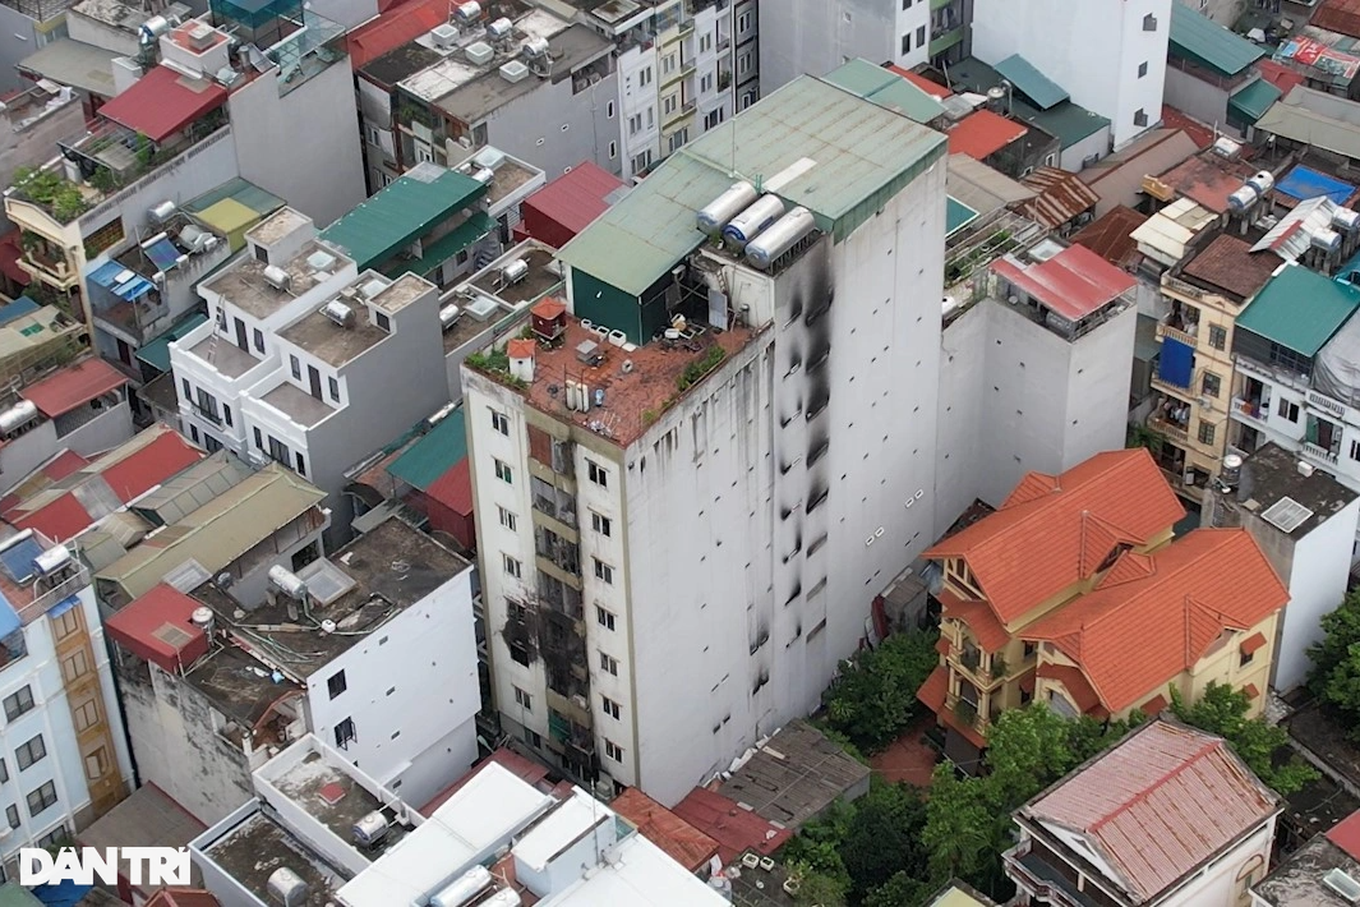 View - Không phải cứ có đất, có tiền là có thể xây chung cư mini để bán, cho thuê | Báo Dân trí